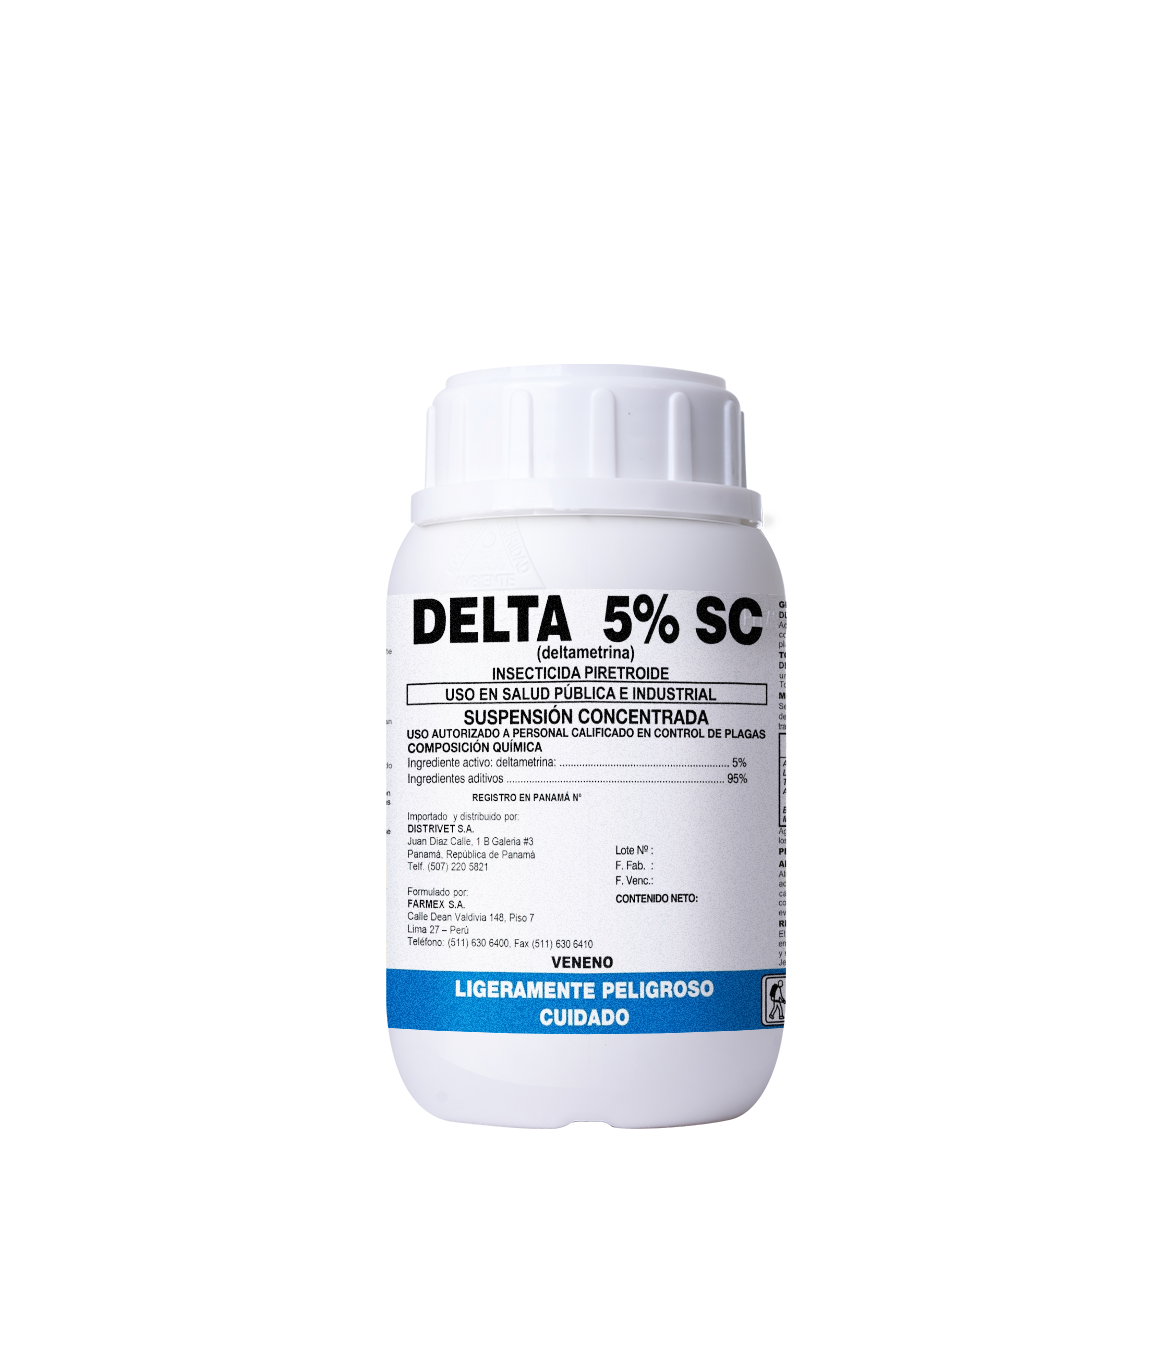 Delta 5% SC